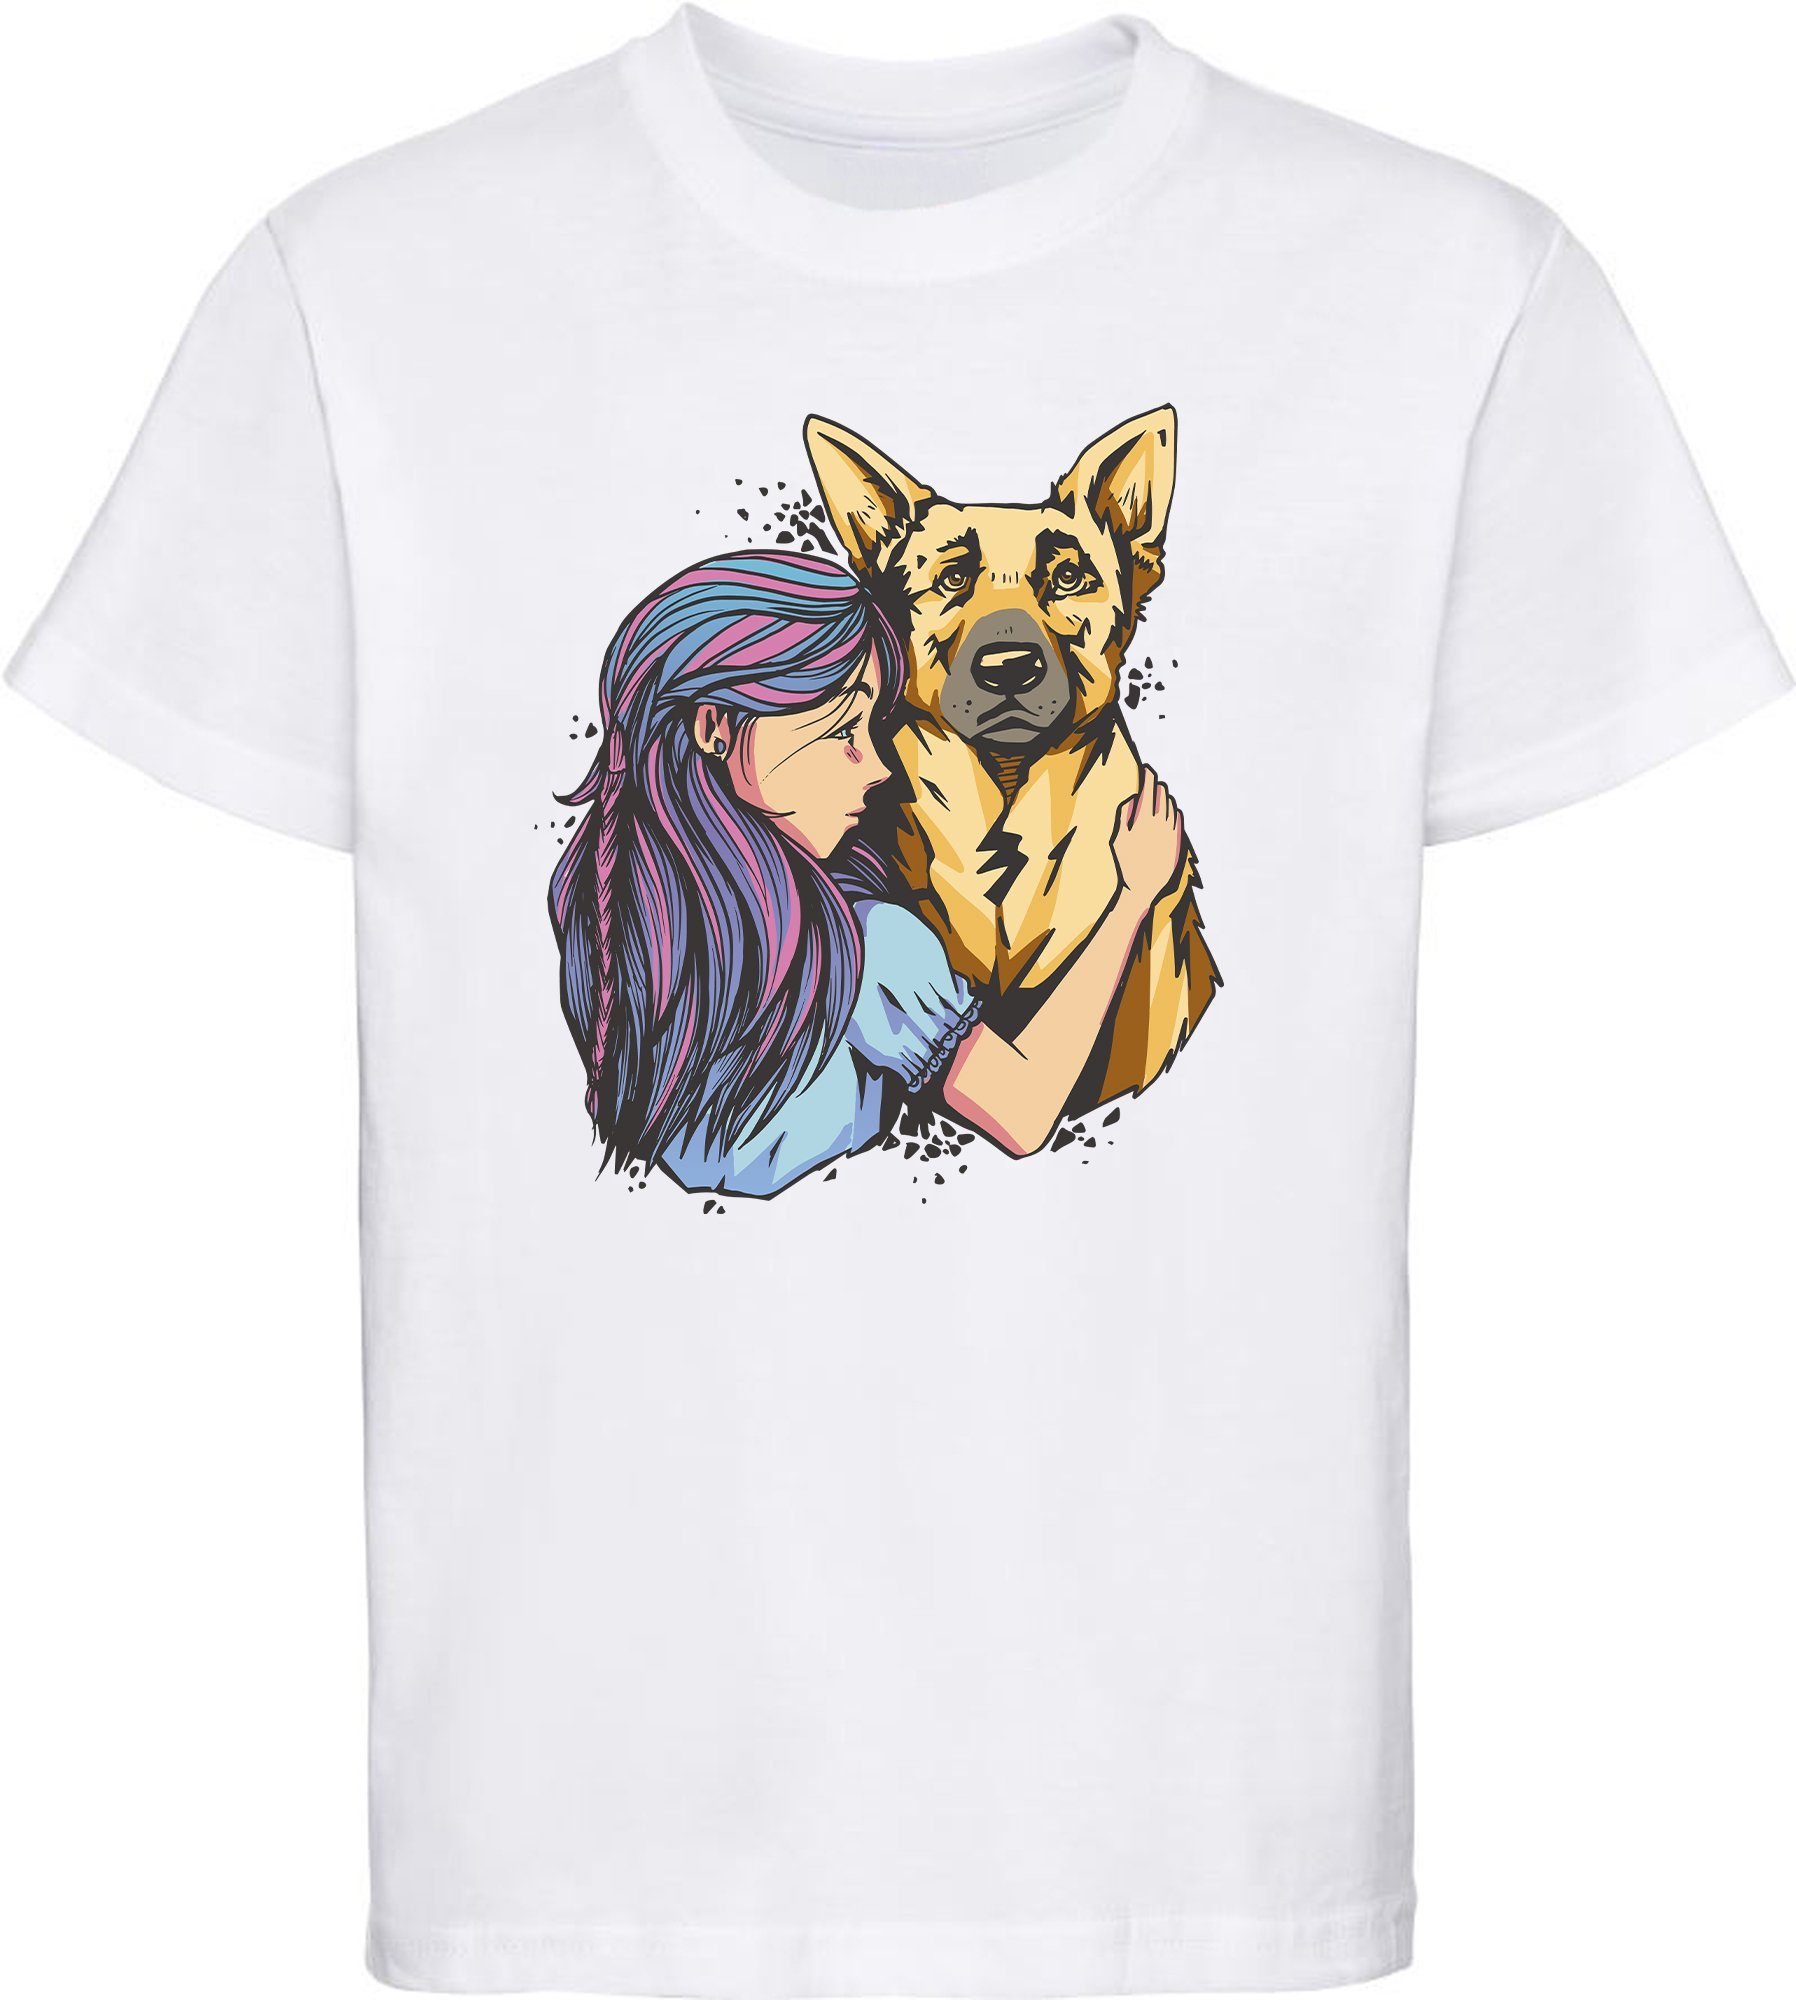 MyDesign24 T-Shirt Kinder Hunde bedruckt Schäferhund weiss Print i258 Shirt - mit Baumwollshirt mit Mädchen Aufdruck